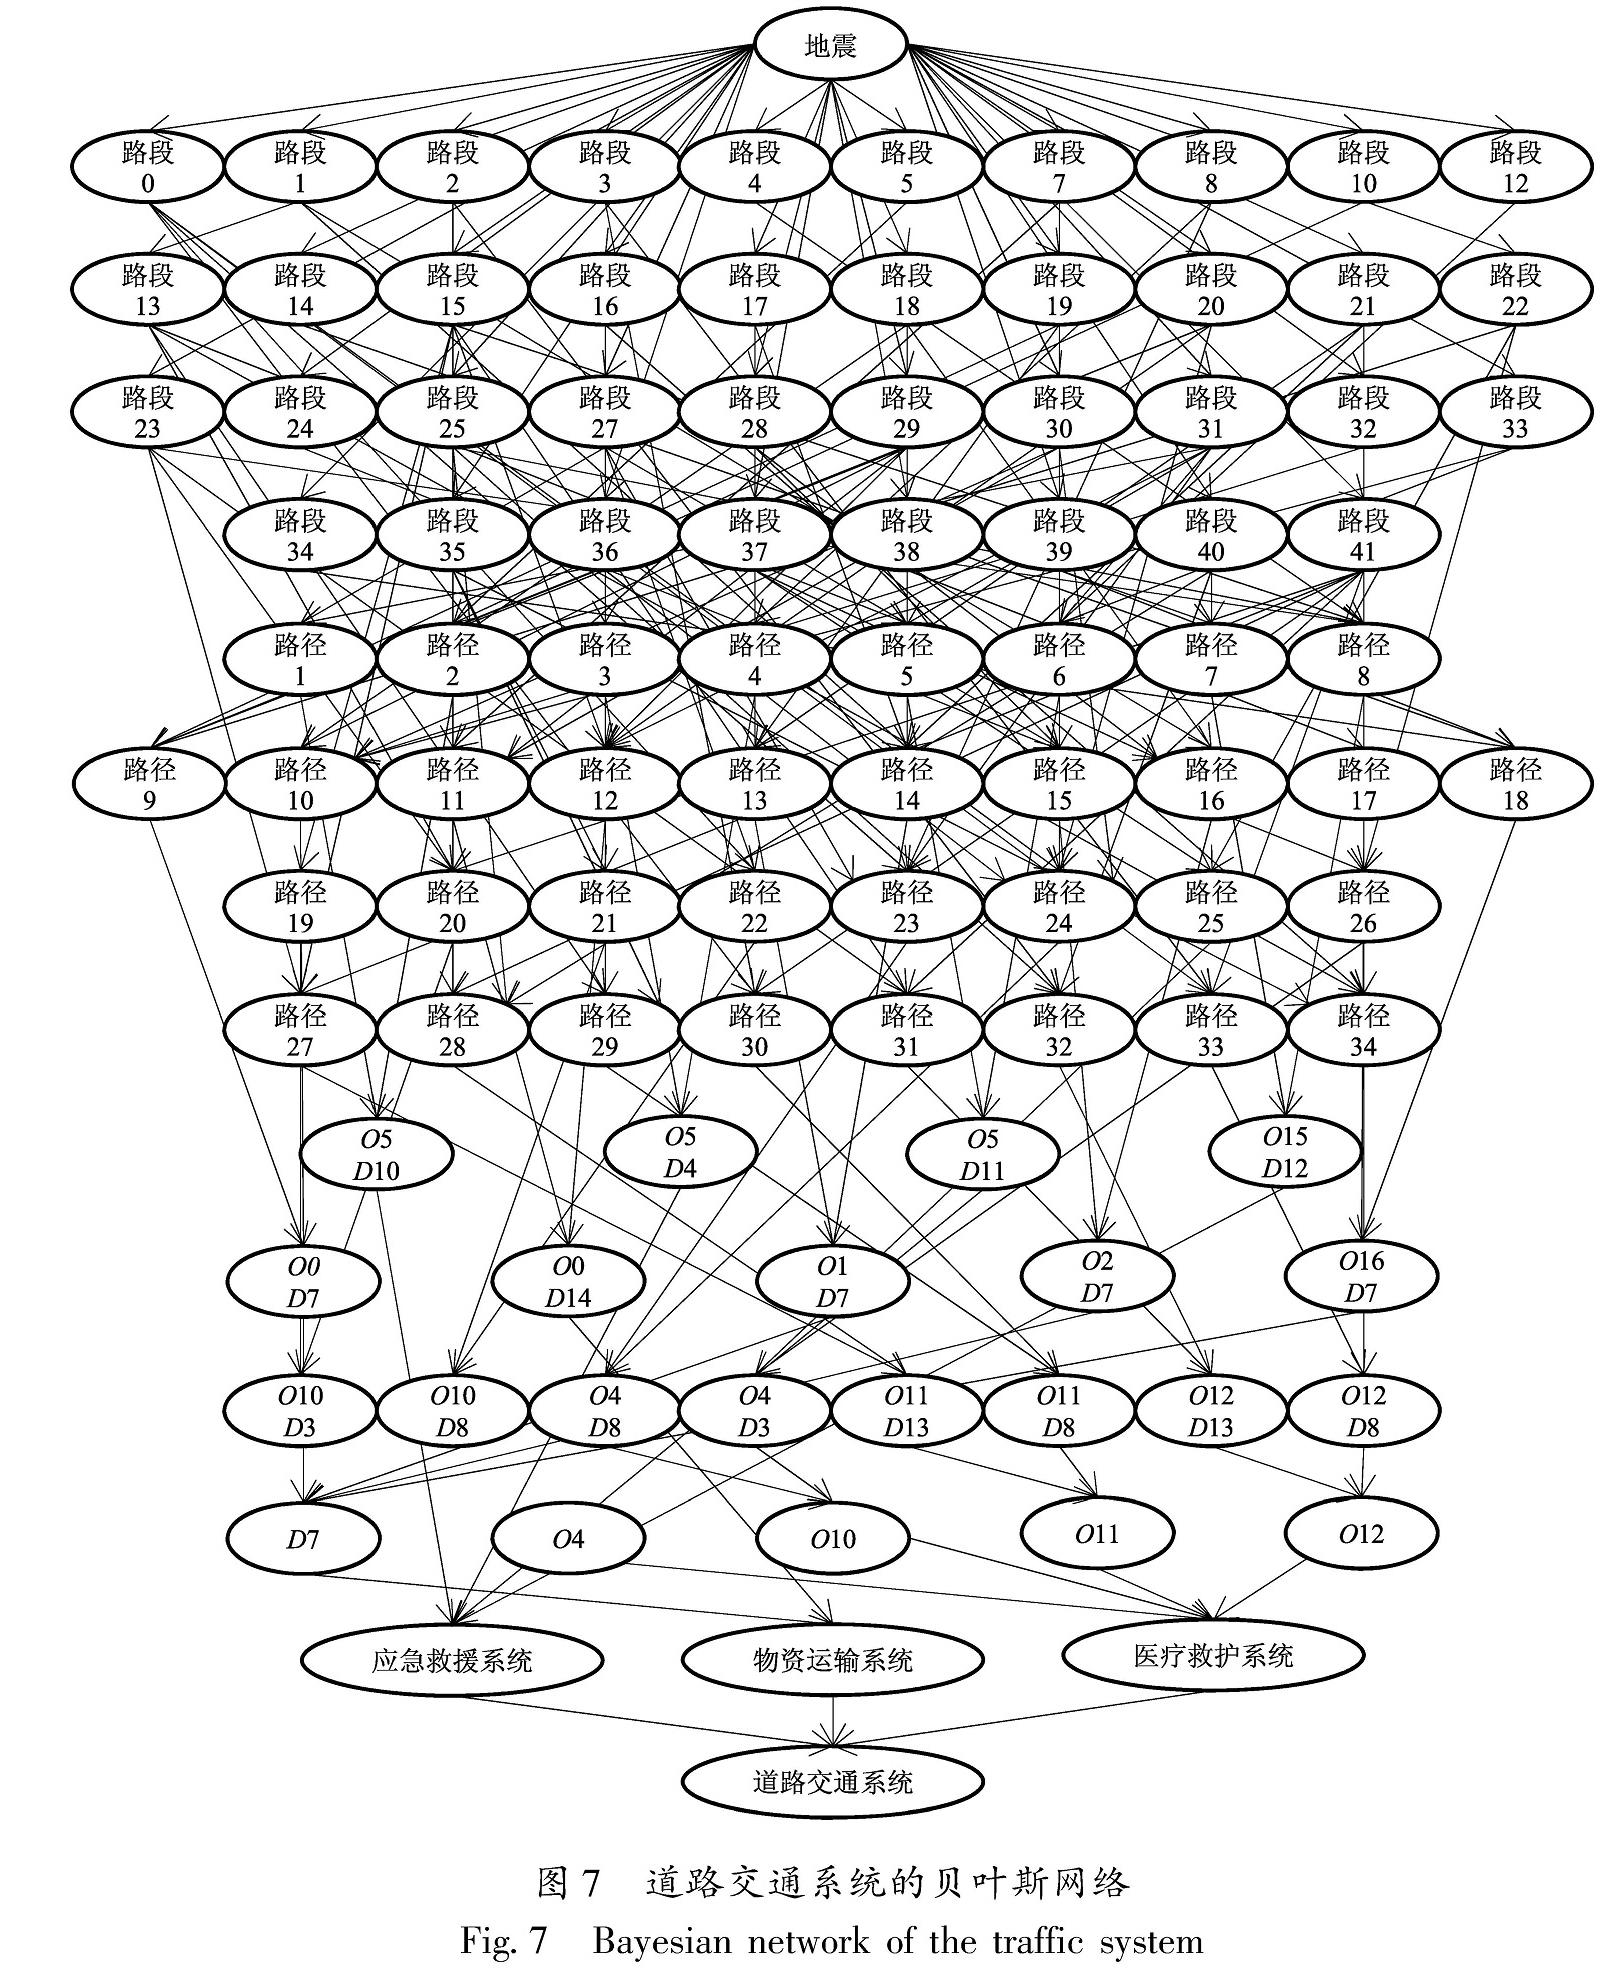 图7 道路交通系统的贝叶斯网络<br/>Fig.7 Bayesian network of the traffic system